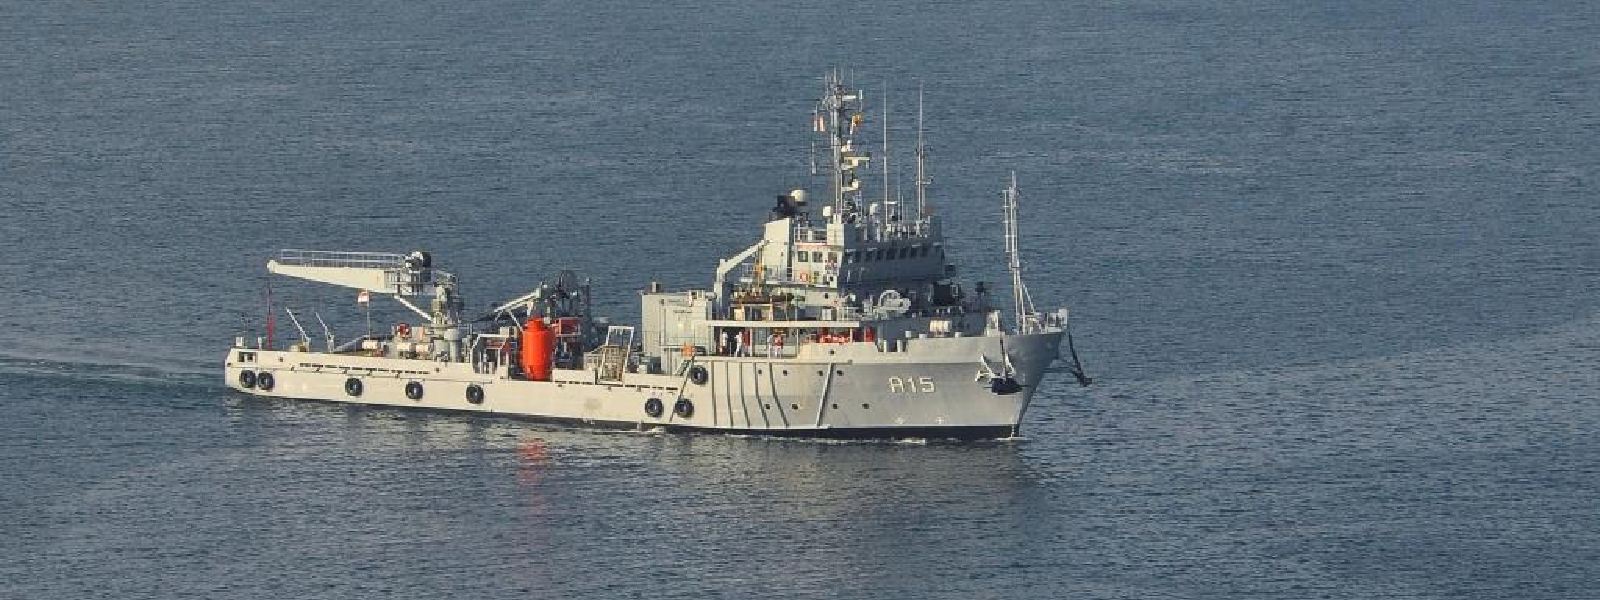 Diving Support Vessel INS Nireekshak arrives at port of Trincomalee